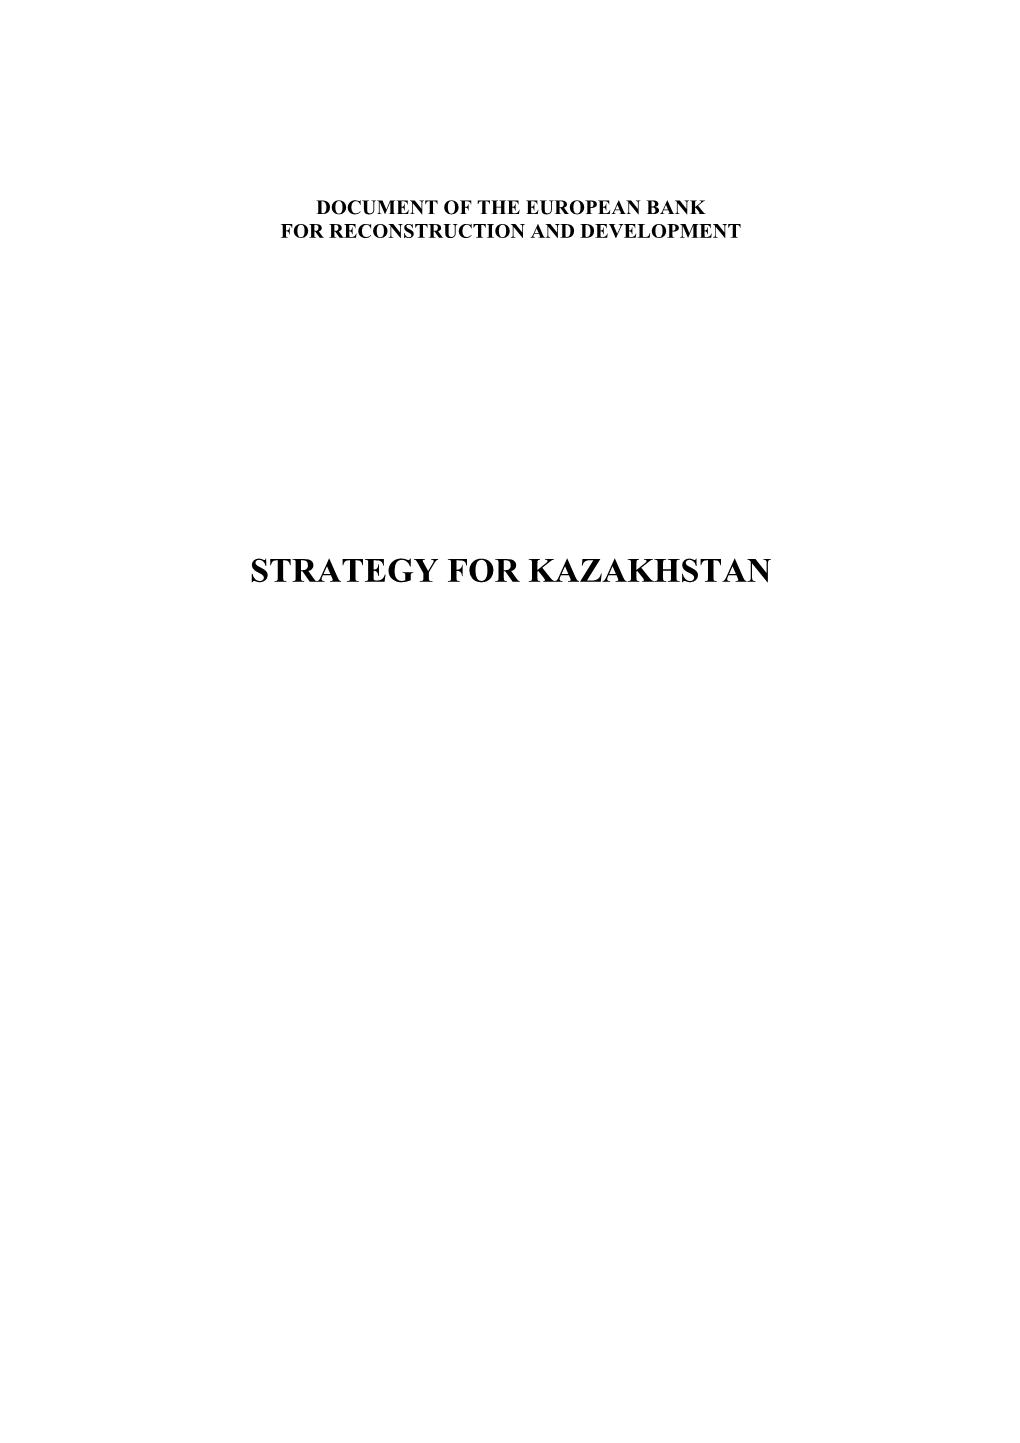 Strategy for Kazakhstan